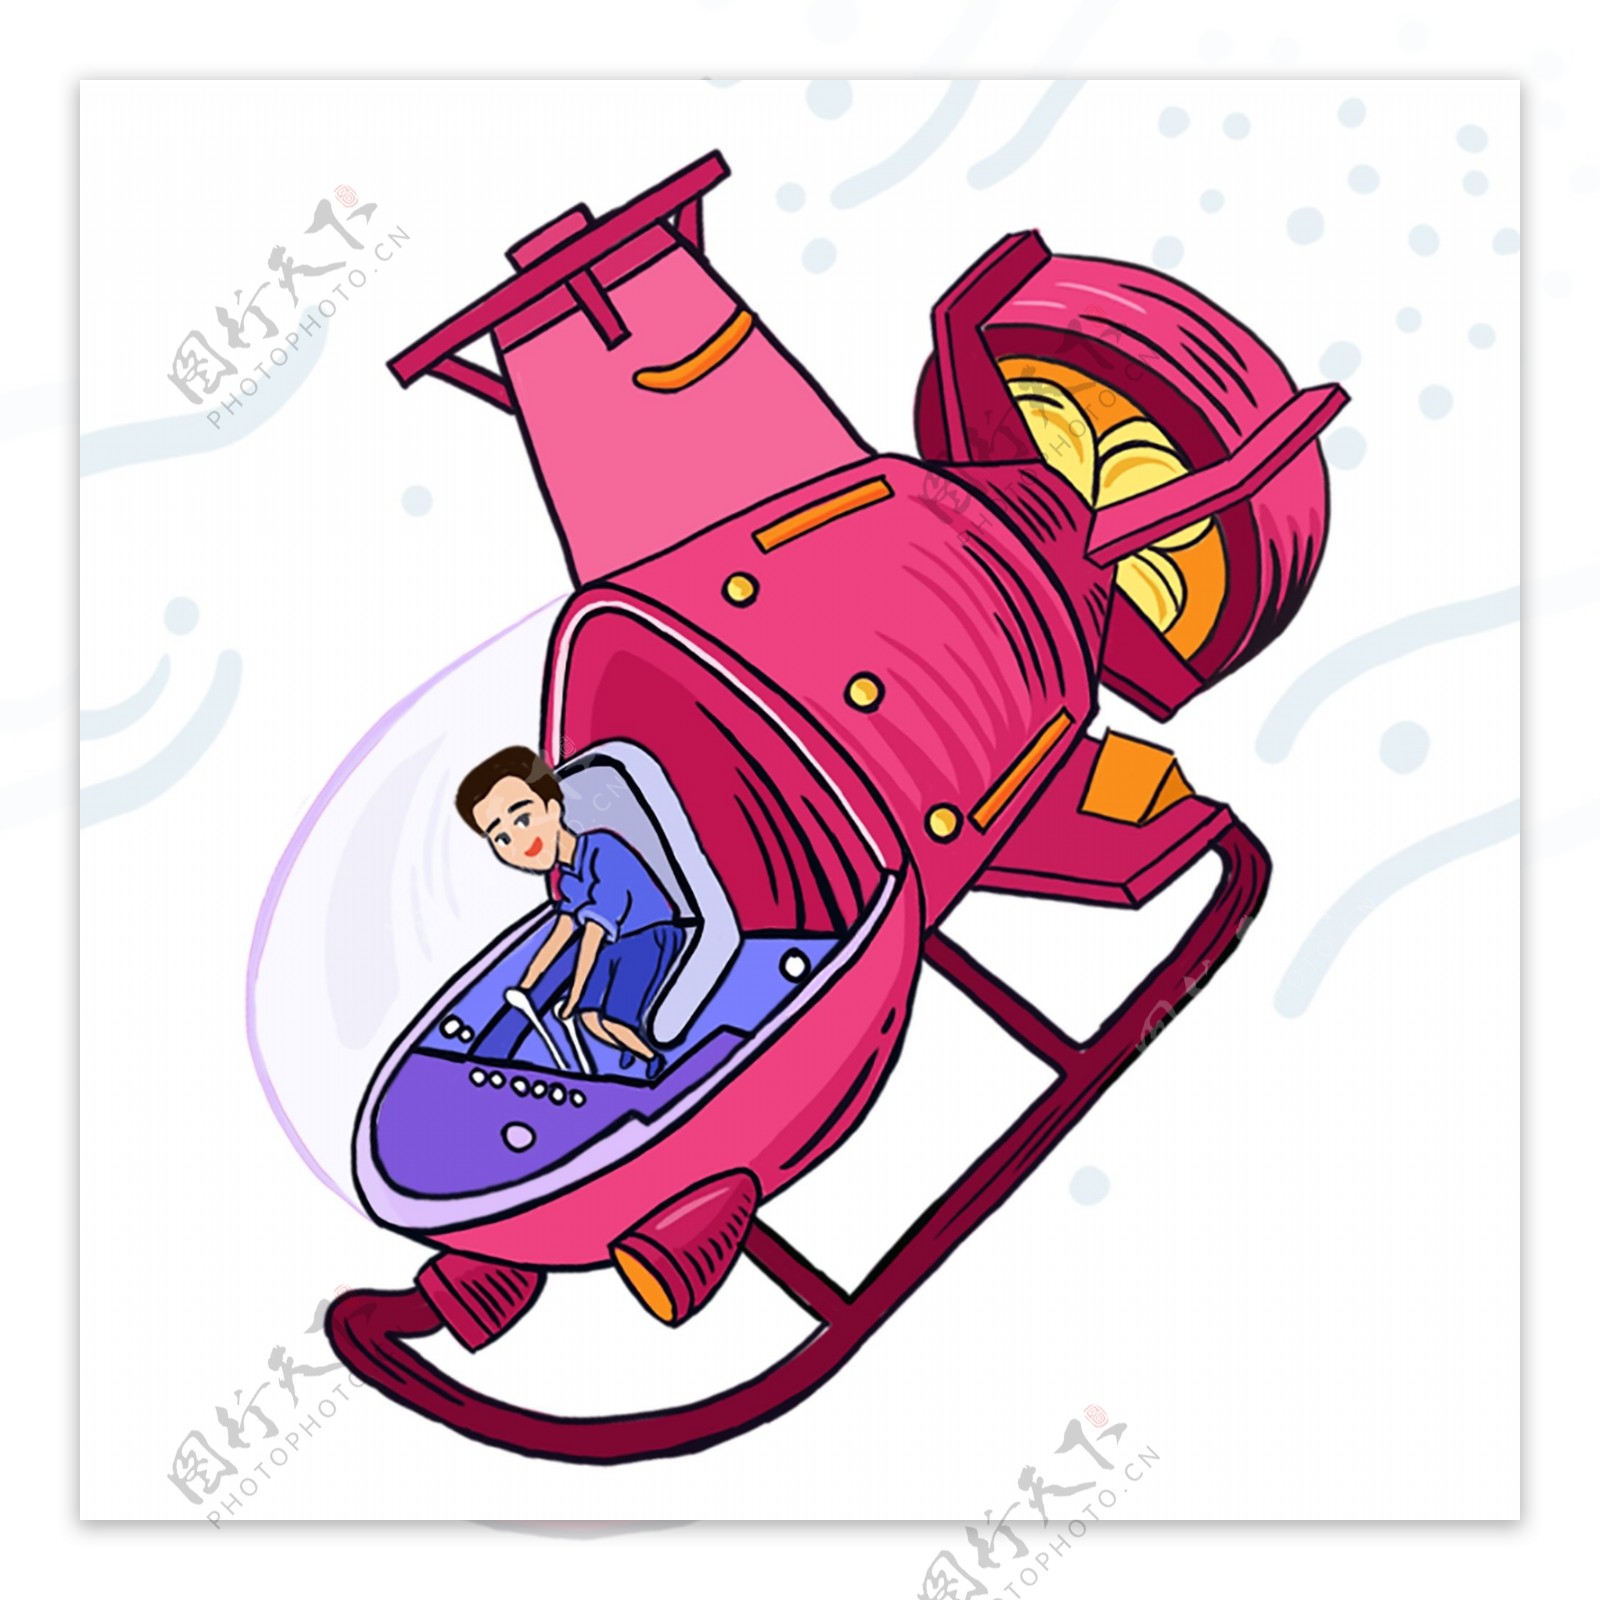 骑着潜艇的少年涂鸦人物设计